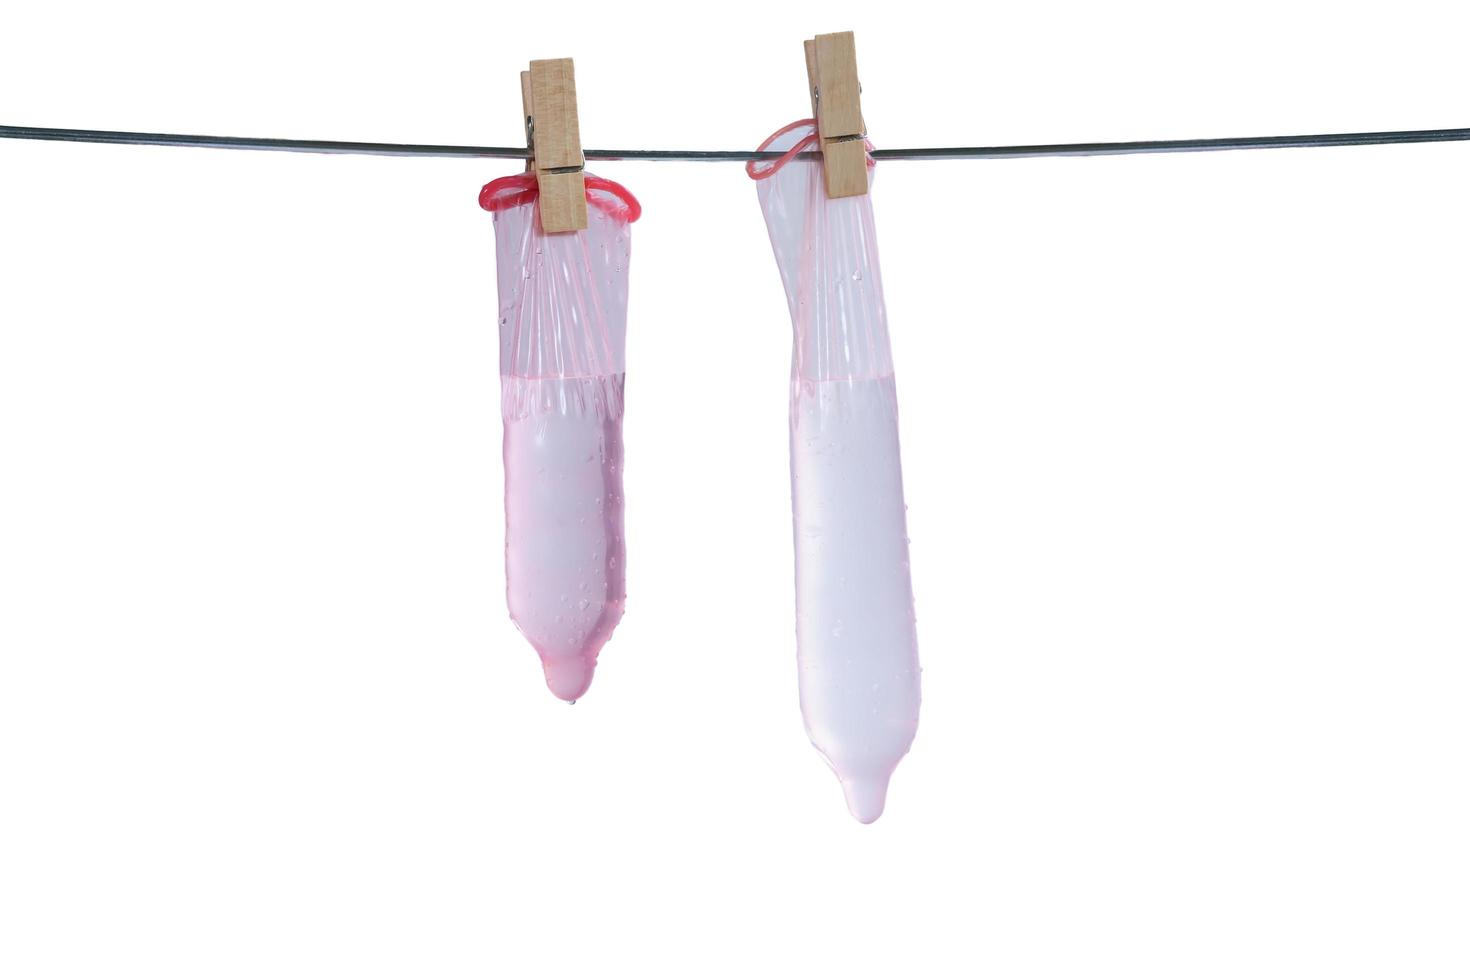 Los preservativos utilizados se secan al sol. concepto de sexo equivocado. foto